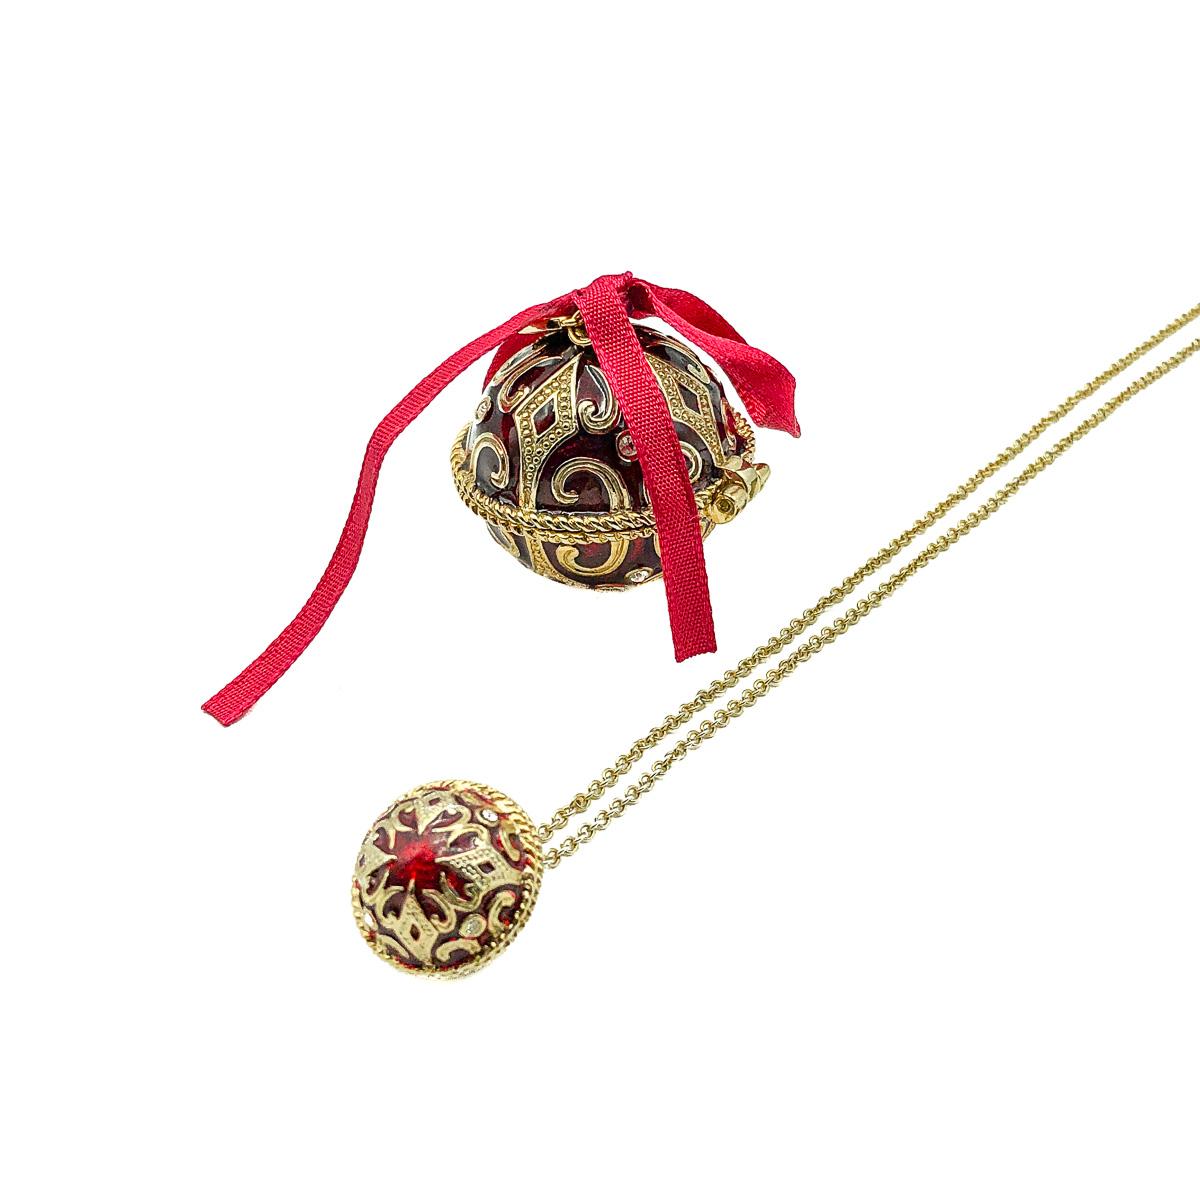 Un collier à billes de Monet datant de Noël 2008. Un délicat pendentif en forme de boule émaillée et une chaîne se trouvent à l'intérieur de la grande boule extérieure. La boule extérieure est parfaite pour la décoration ou comme petite boîte.